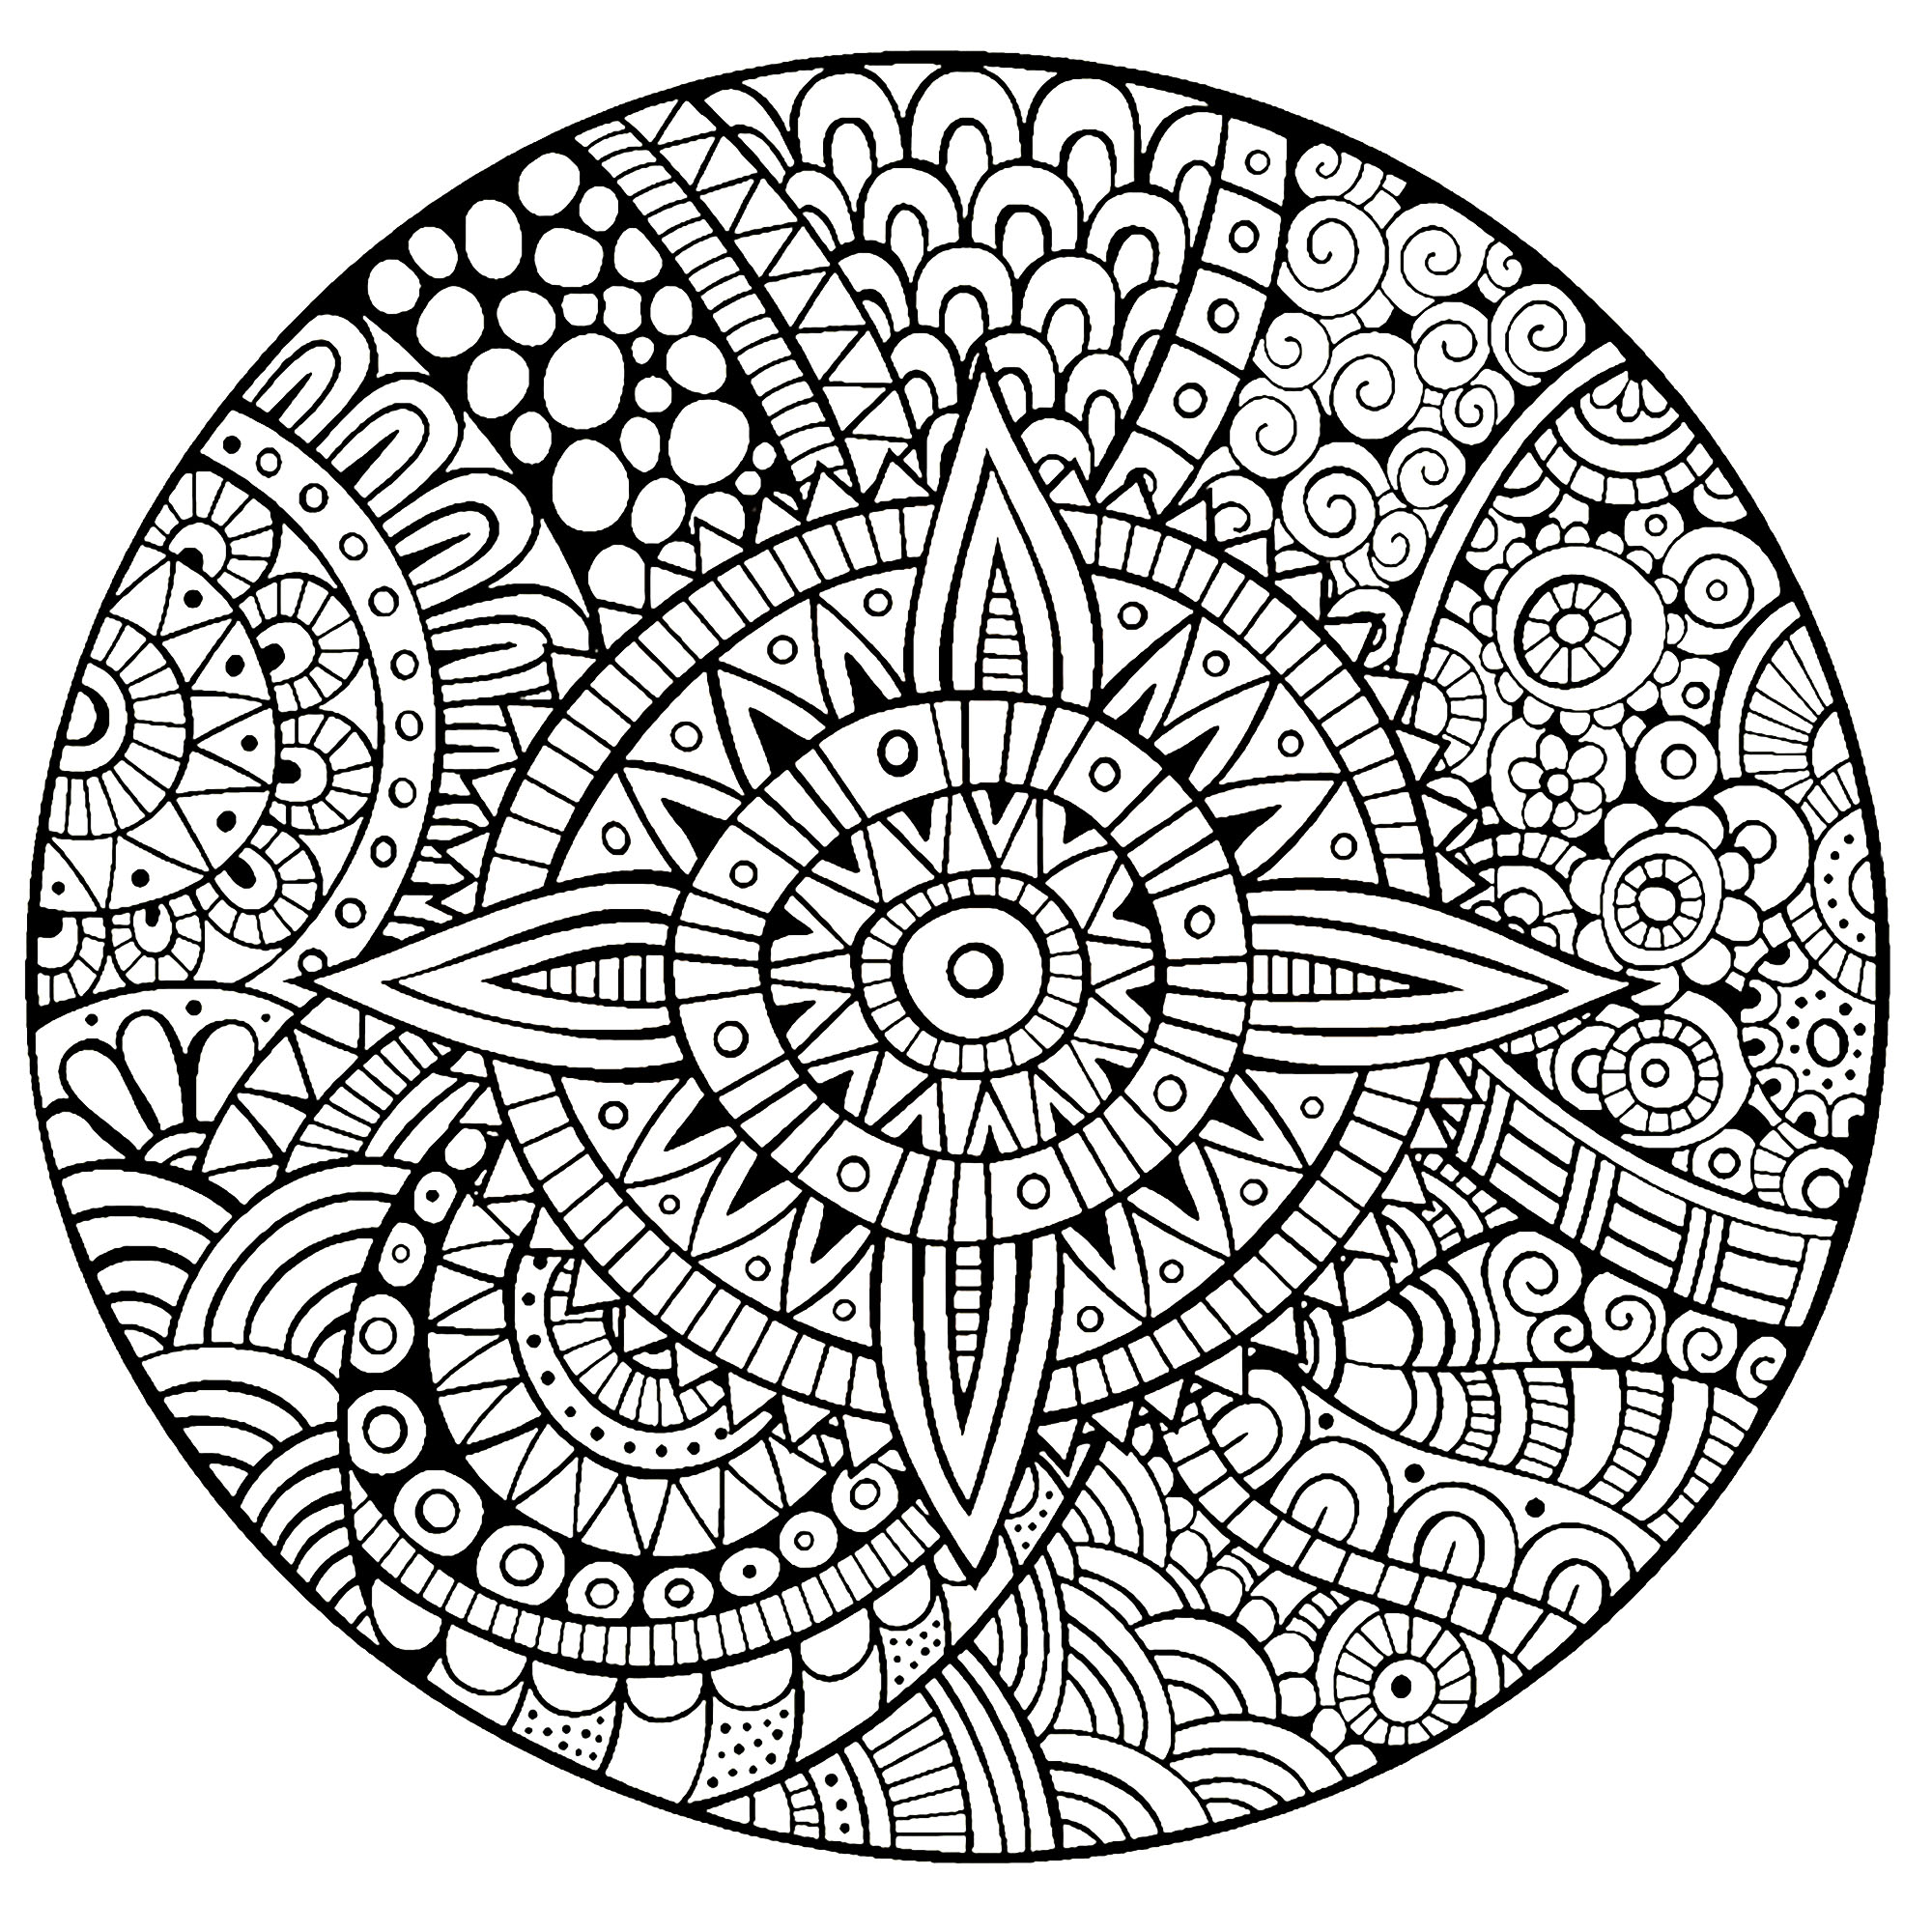 Ein Mandala, das garantiert 100% Zen ist, für einen Moment der puren Entspannung. Sie werden die wohltuende Wirkung des Ausmalens dank dieser völlig einzigartigen und beruhigenden Zeichnung schnell spüren.